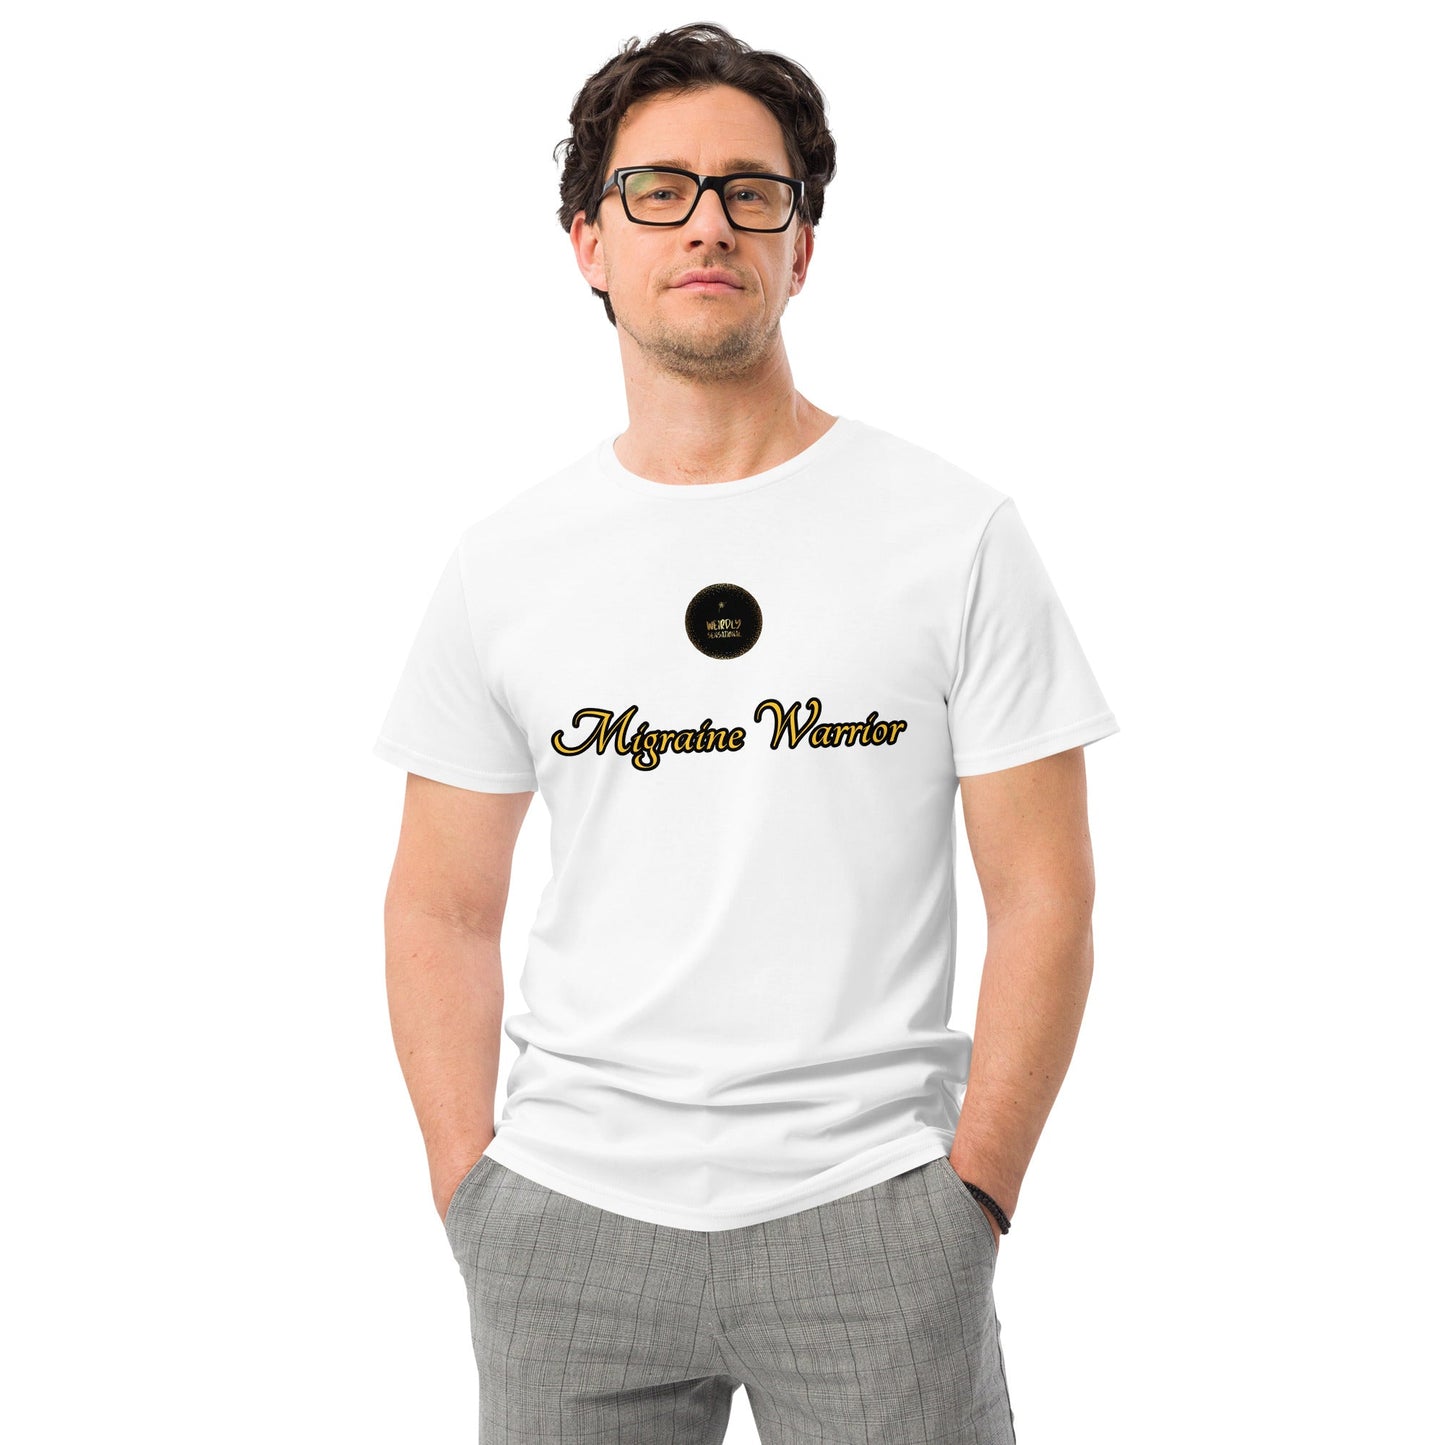 Migraine Warrior Men's premium cotton t-shirt - Weirdly Sensational